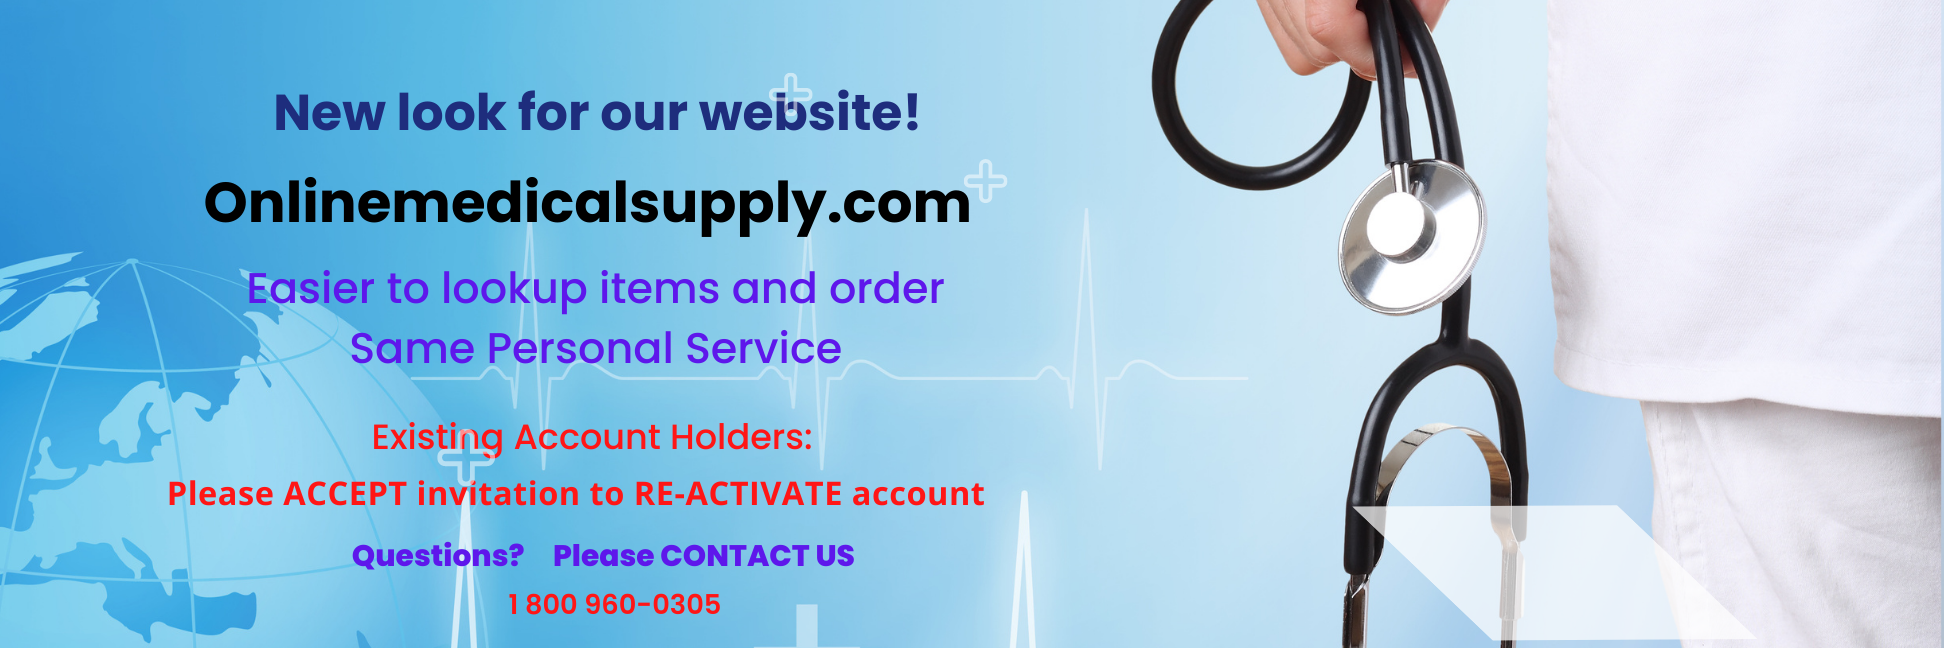 Online Medical Supply Banner